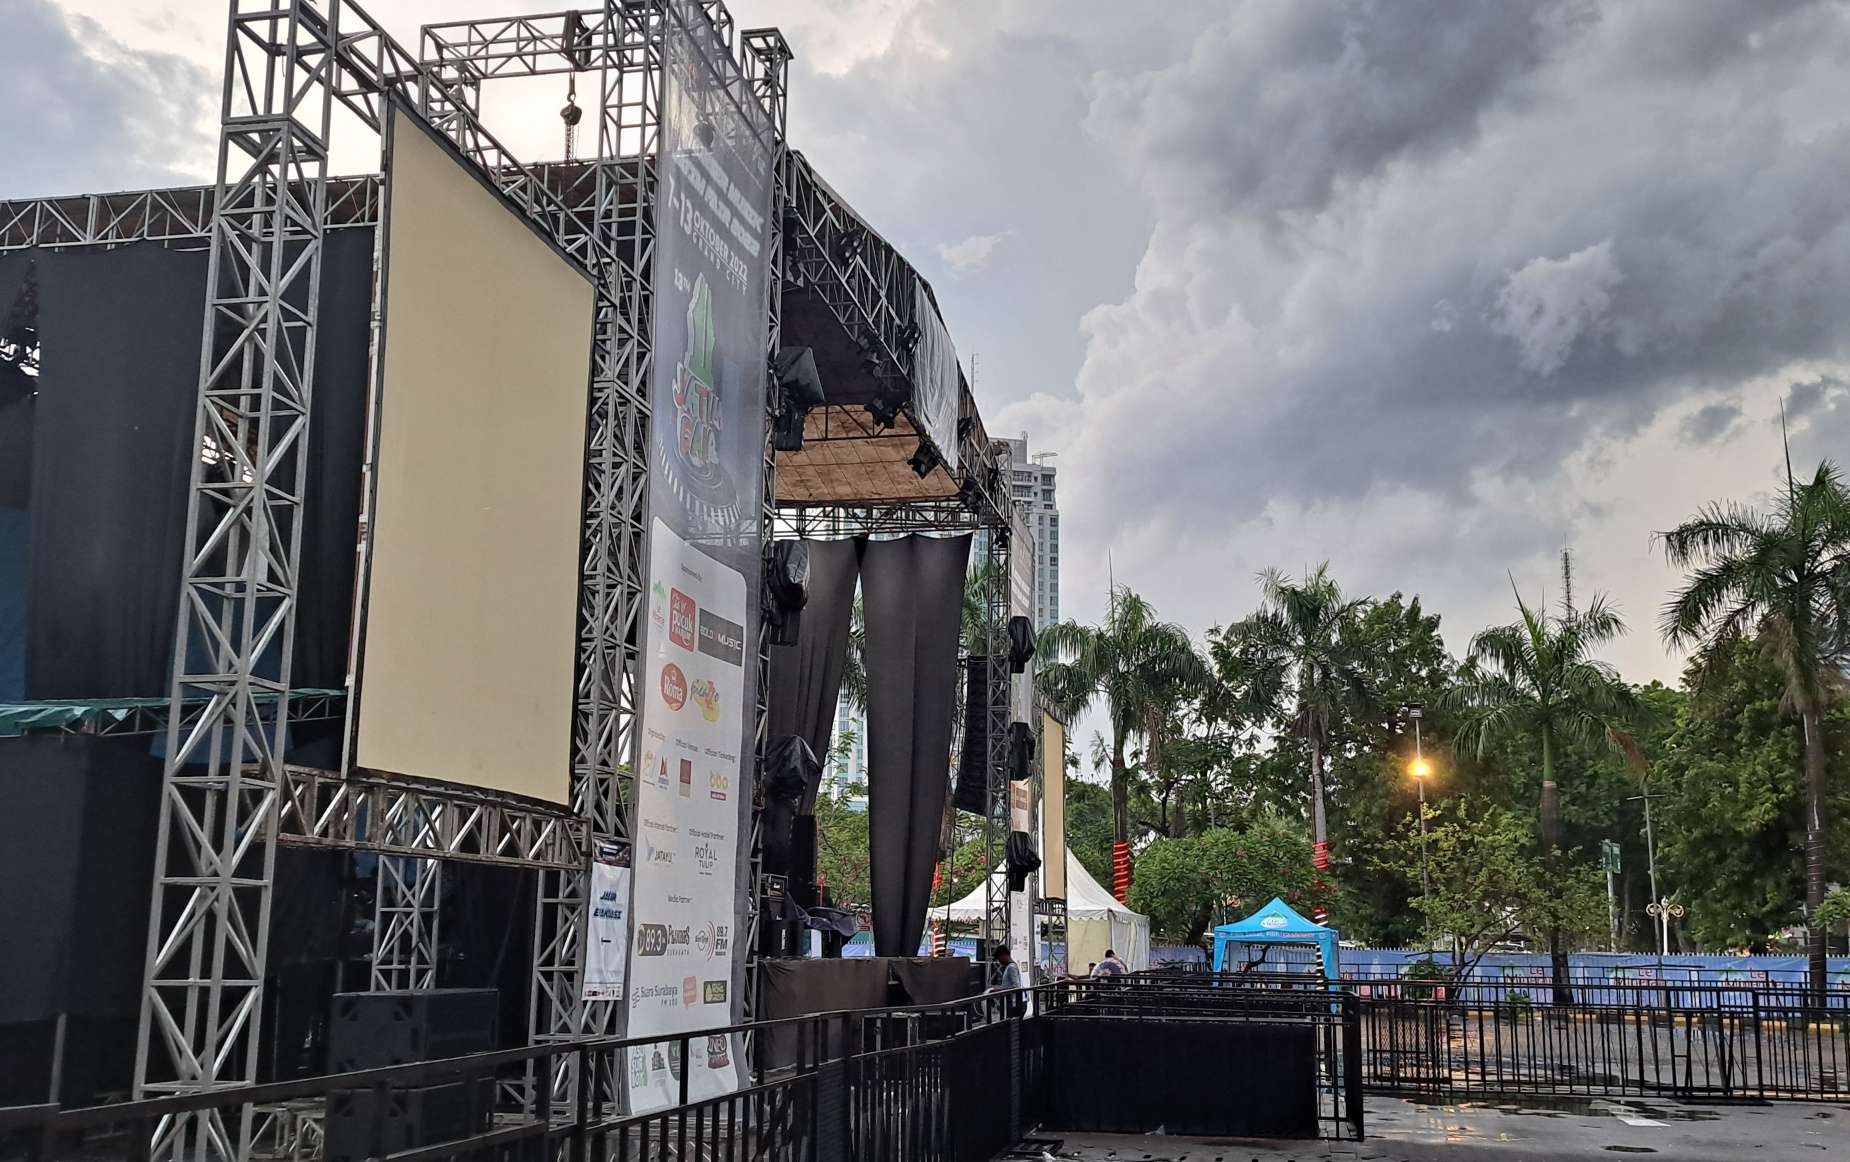 Venue konser musik JATIM Fair 2022 yang dihentikan karena terkait masalah kemanusian tragedi Kanjuruhan dan keamanan. (Foto: Pita Sari/Ngopibareng.id)